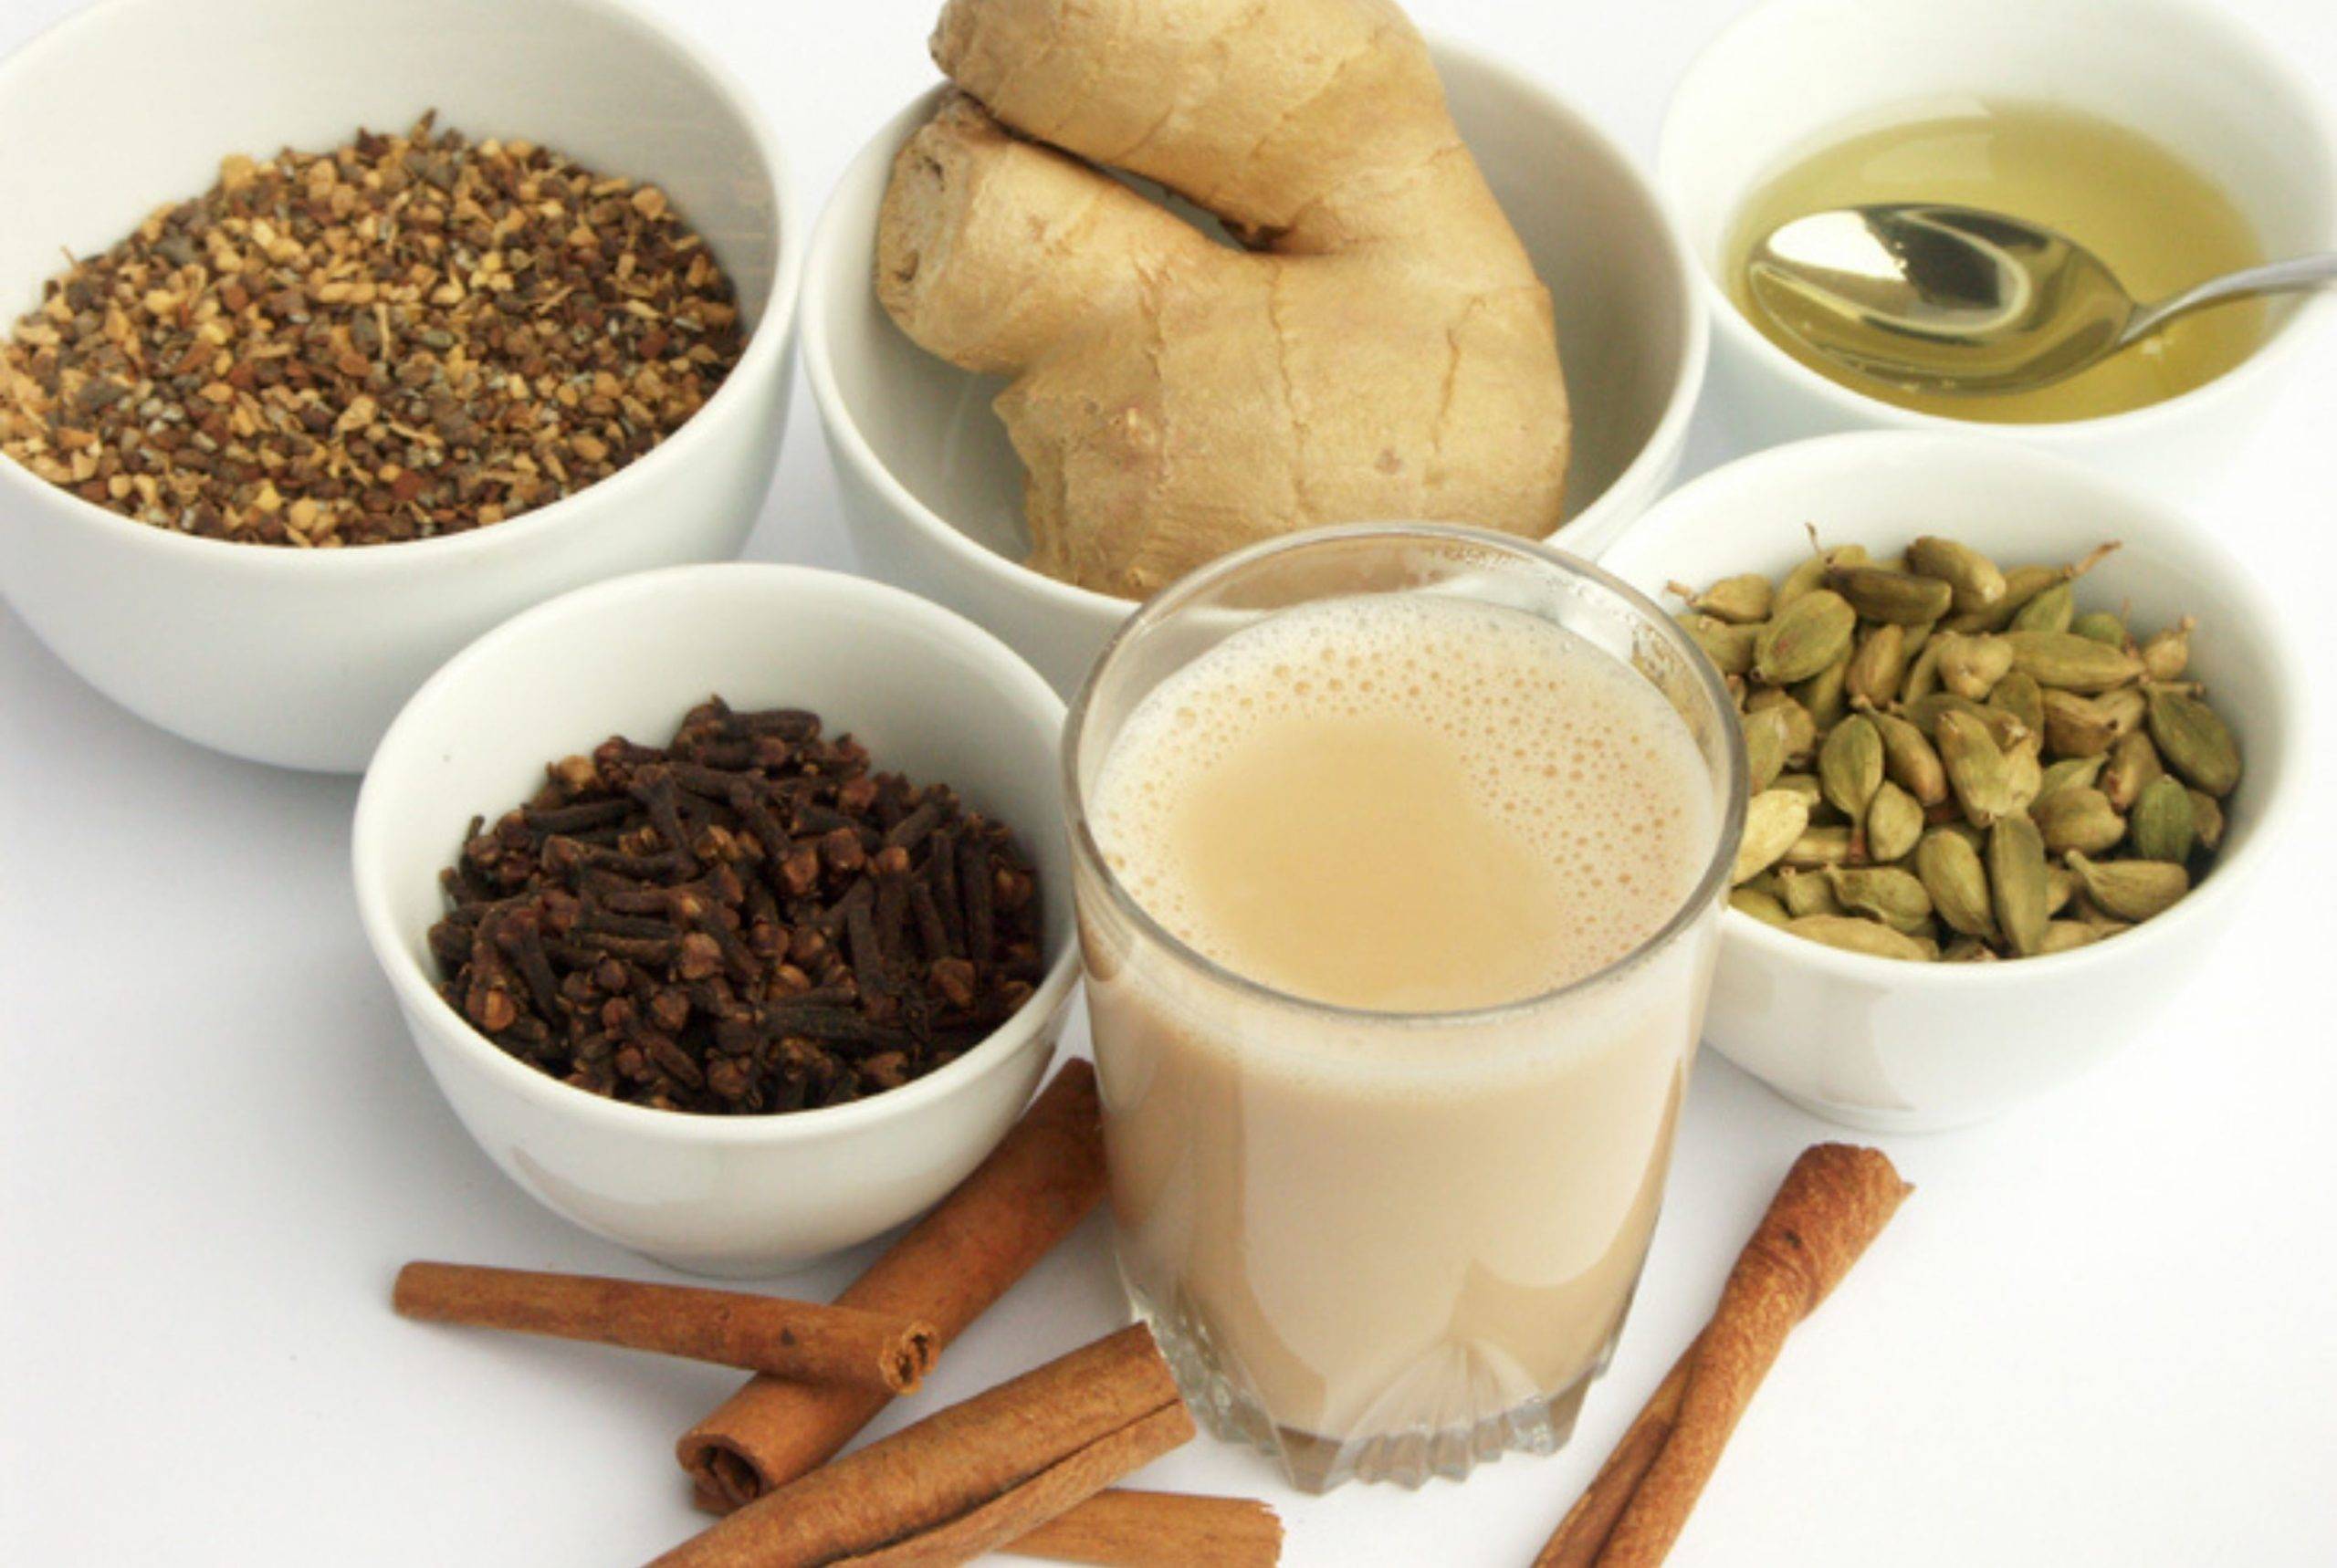 Чай масала: рецепт приготовления (классический), что это такое и как заваривать в домашних условиях, польза и вред, индийский чай с молоком и специями